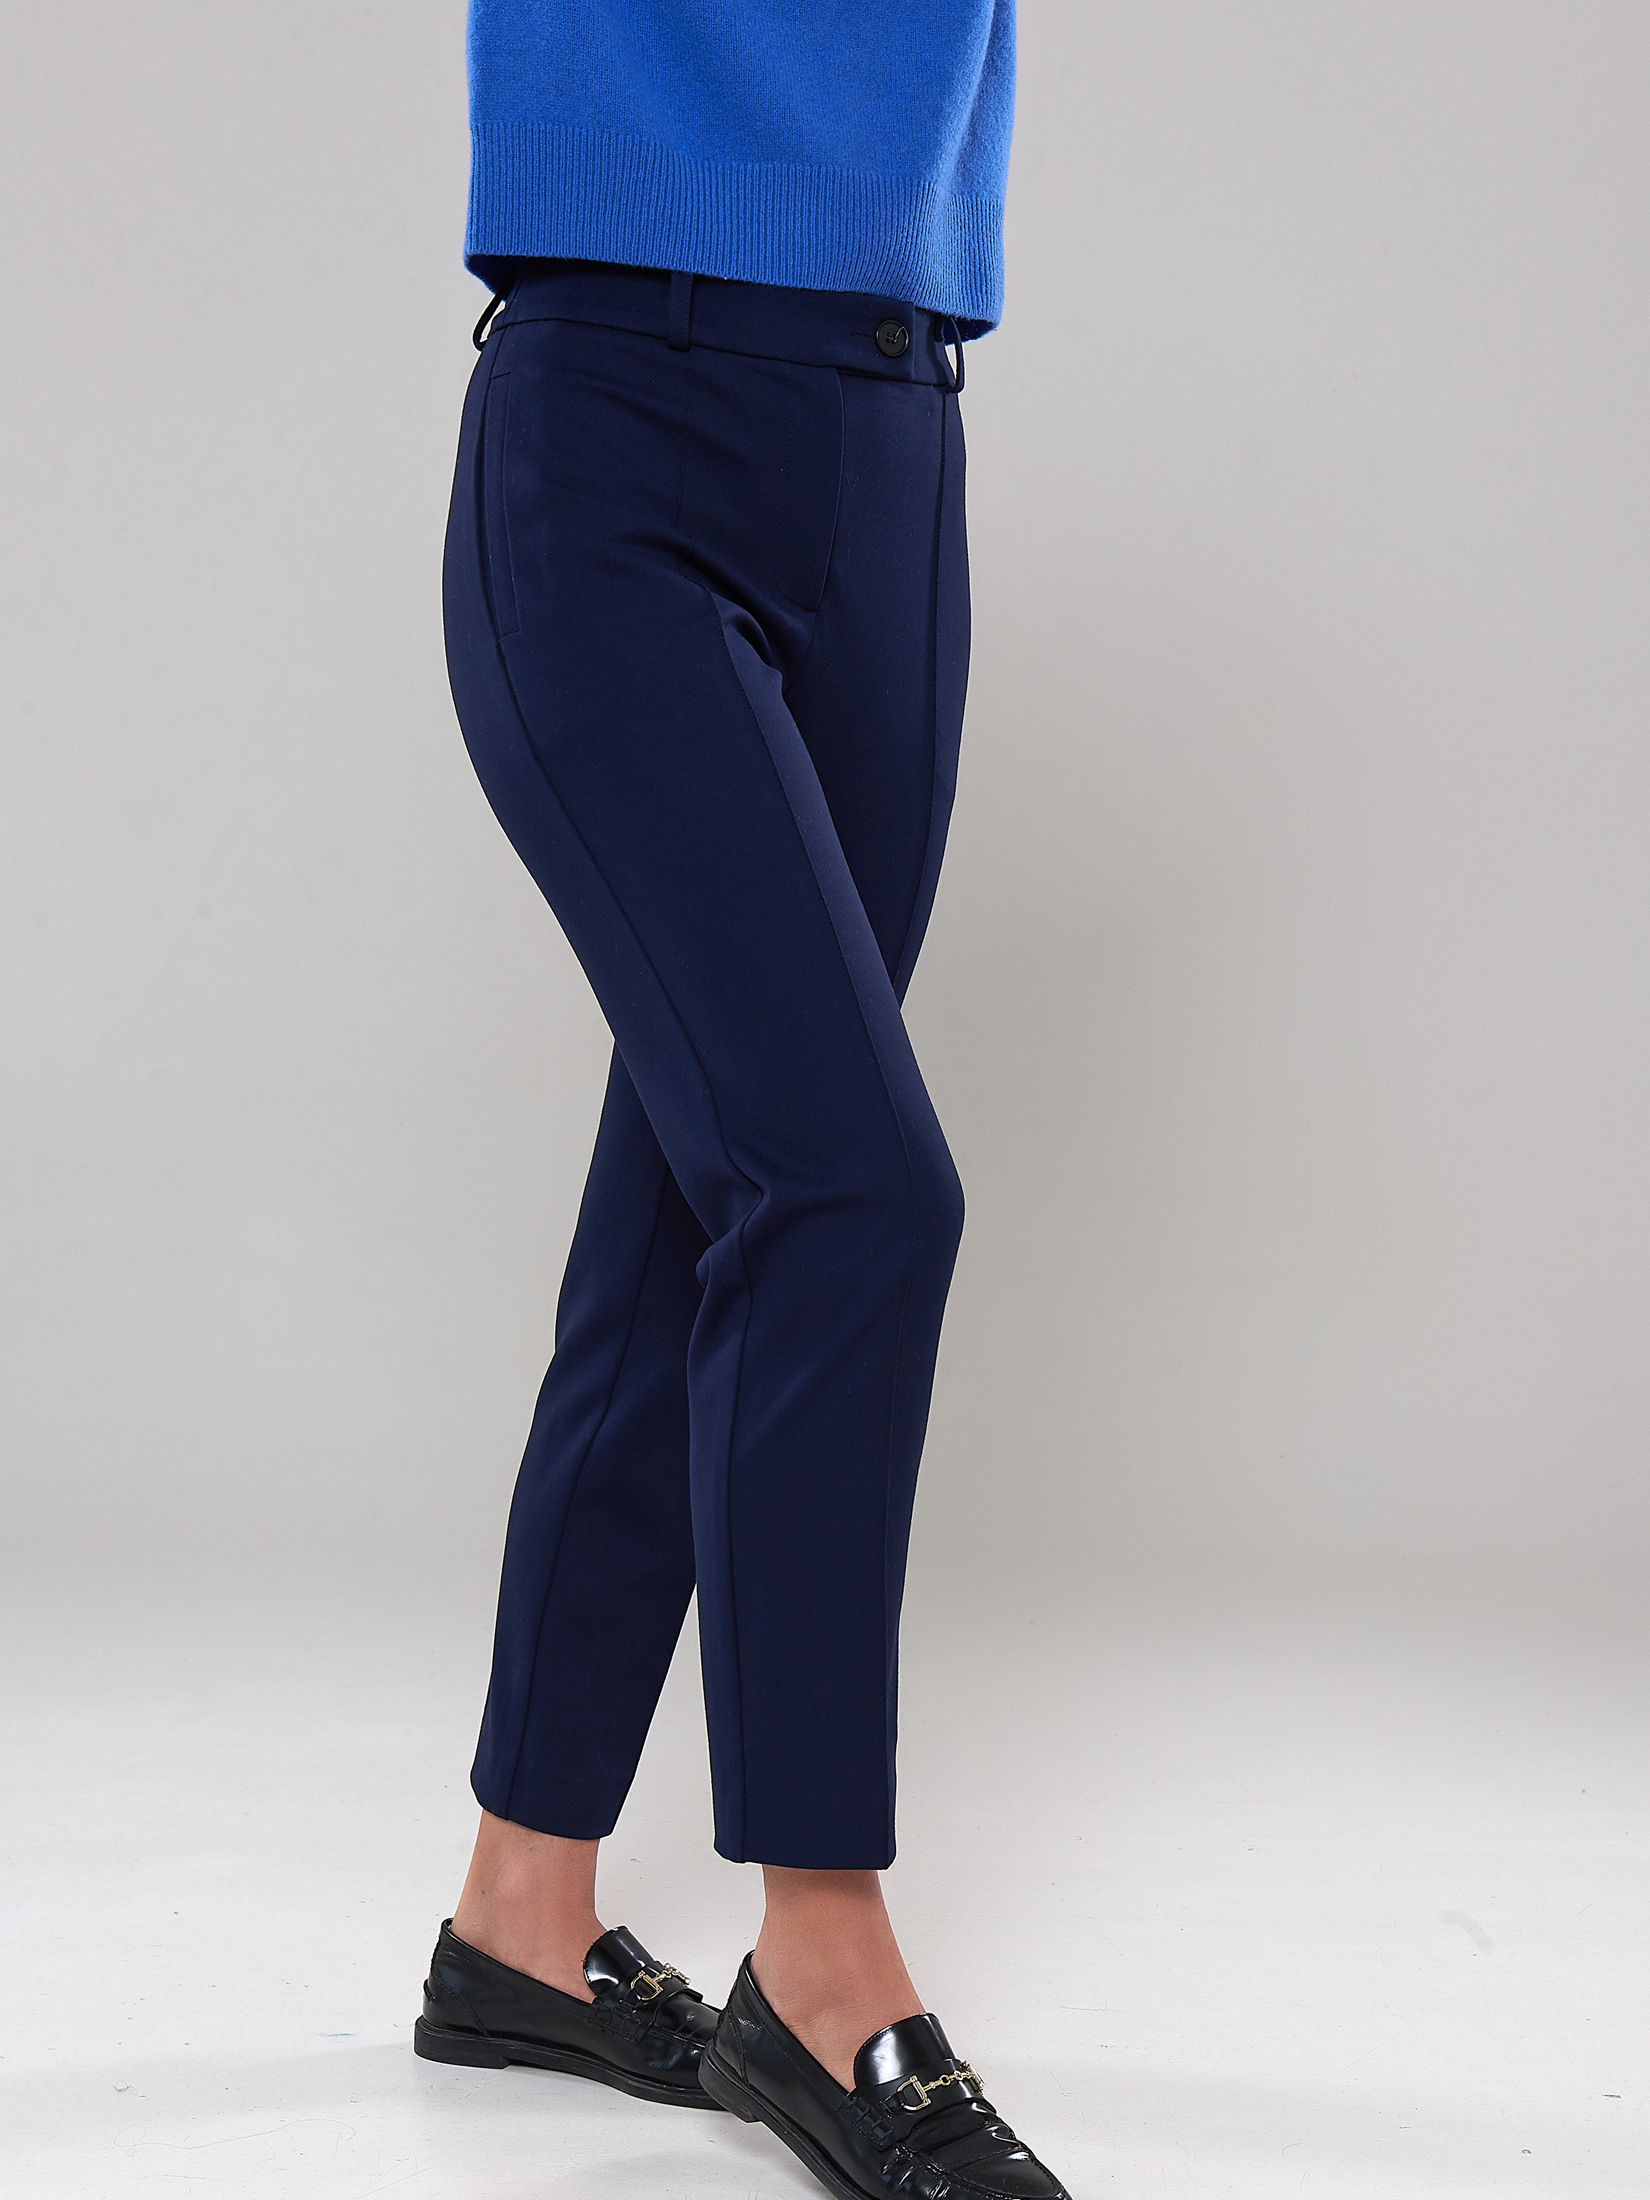 Женские синие брюки на заказ. Индивидуальный пошив в ателье AI. Москва